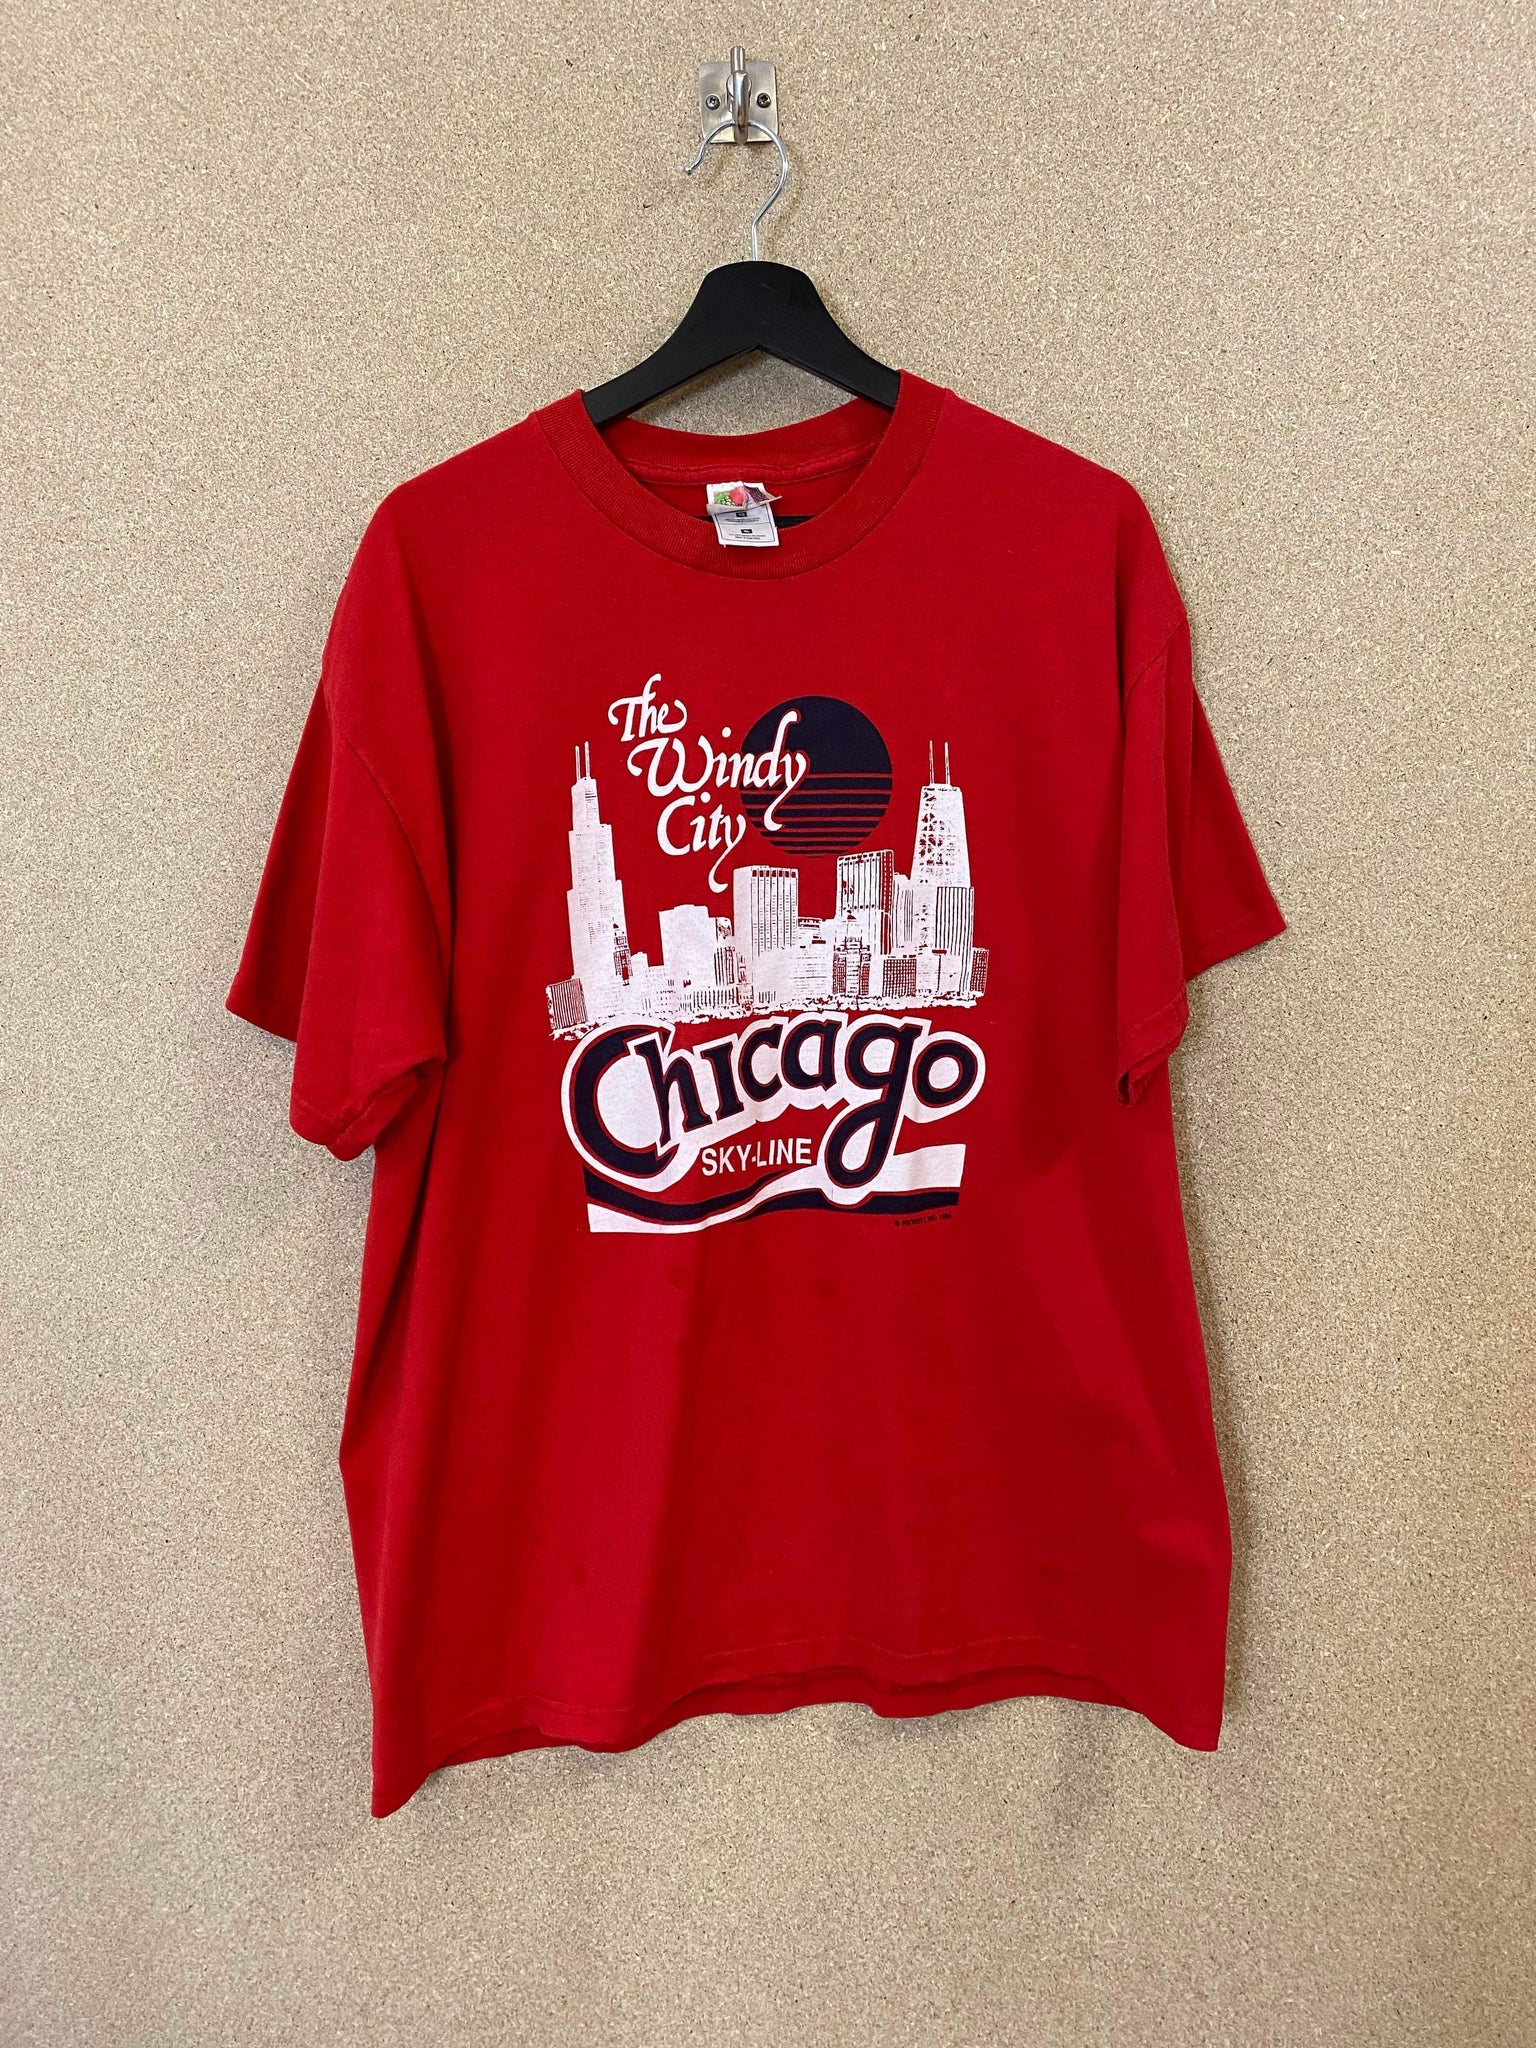 Vintage Chicago Skyline 1990 Tee - XL